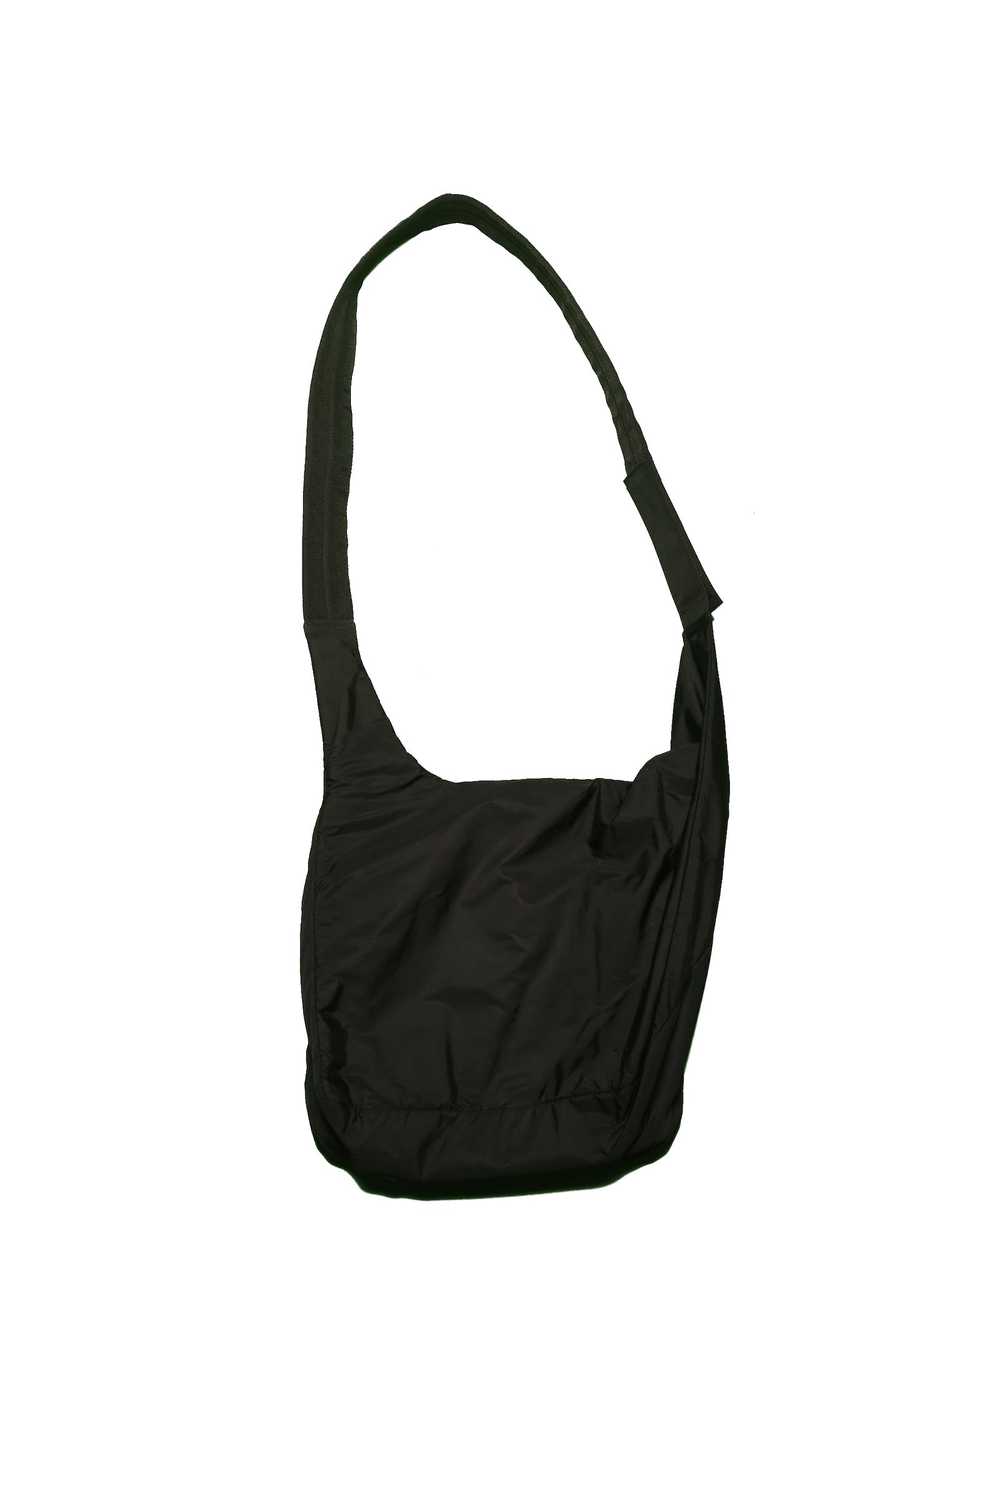 Prada Prada Transparent Shoulder Bag - image 2